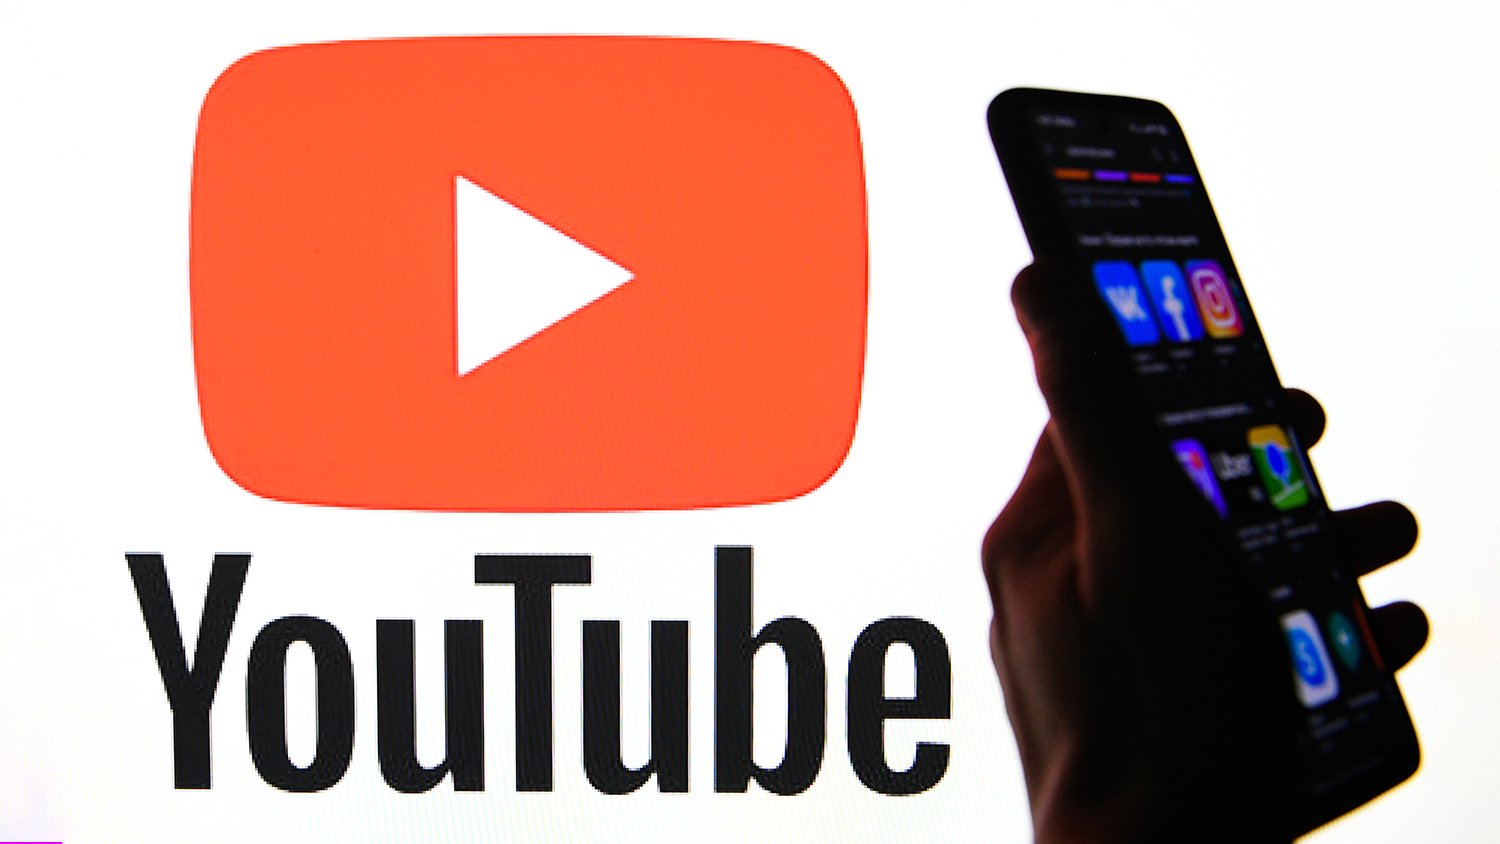 YouTube-ը հայտարարել է հարկեր սահմանելու մտադրության մասին